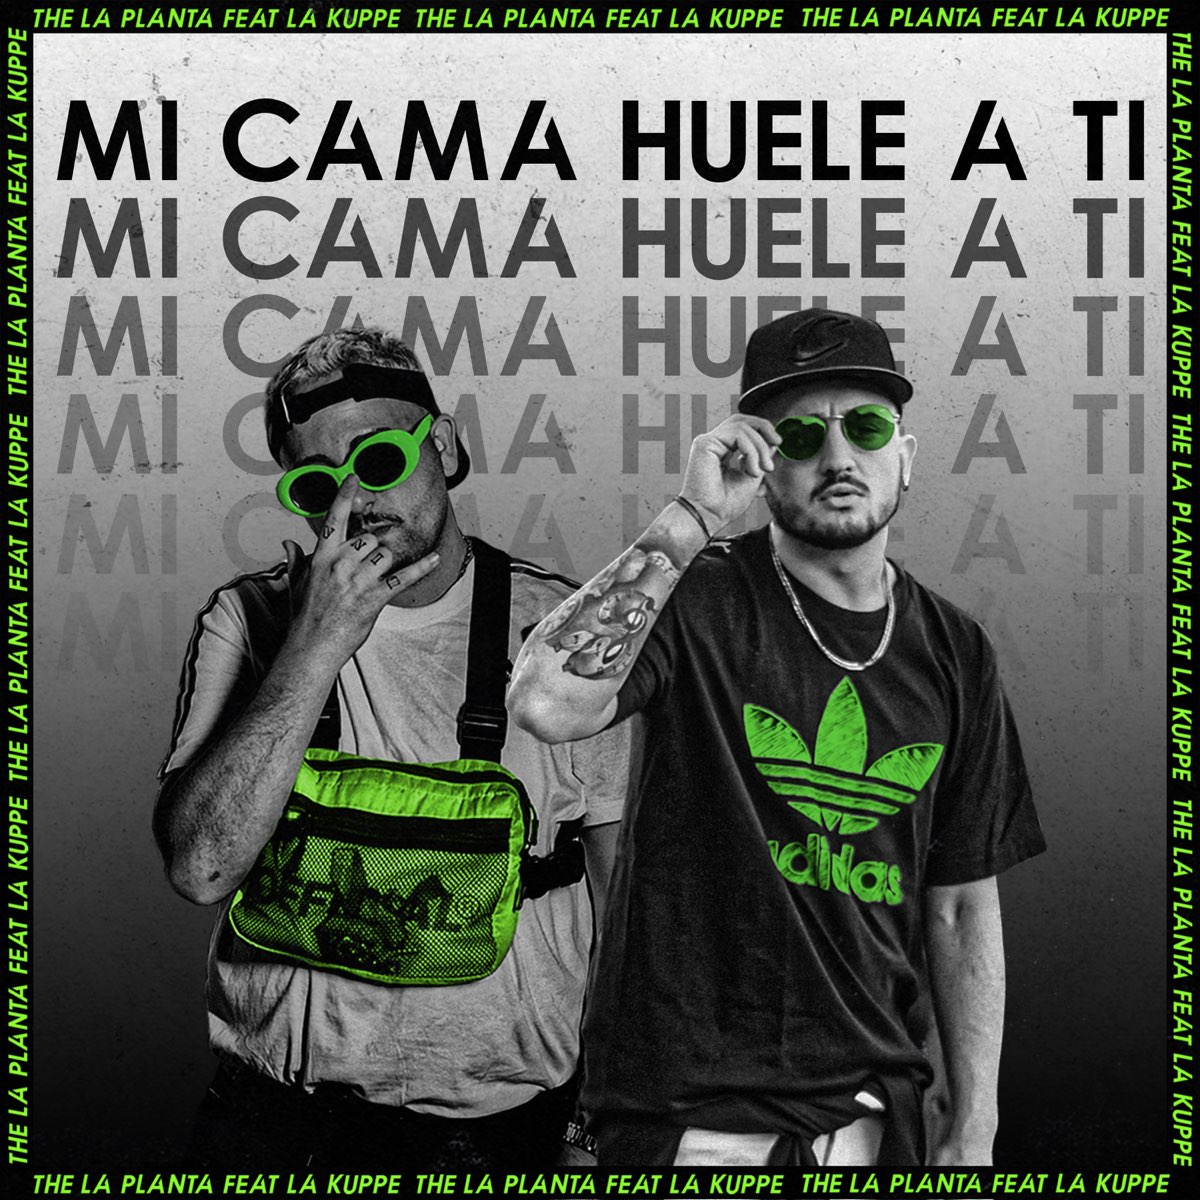 exhaustivo Subir Vueltas y vueltas Mi Cama Huele a Ti - Single de La Kuppé en Apple Music